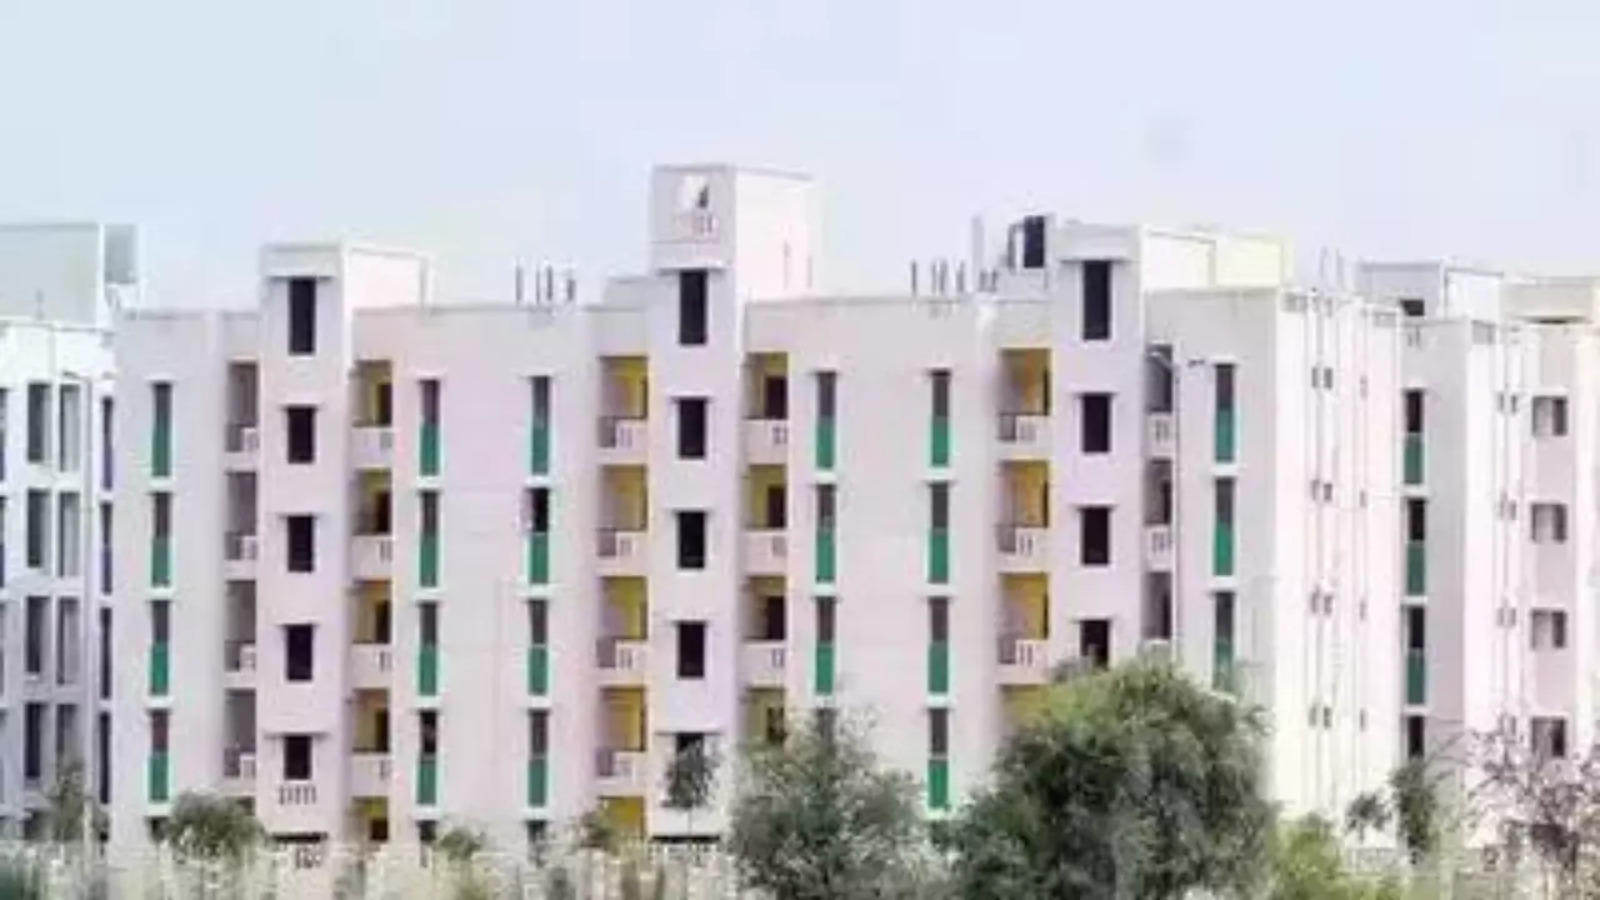 dda housing scheme 2023 dda to offer 3000 premium properties in upcoming housing scheme